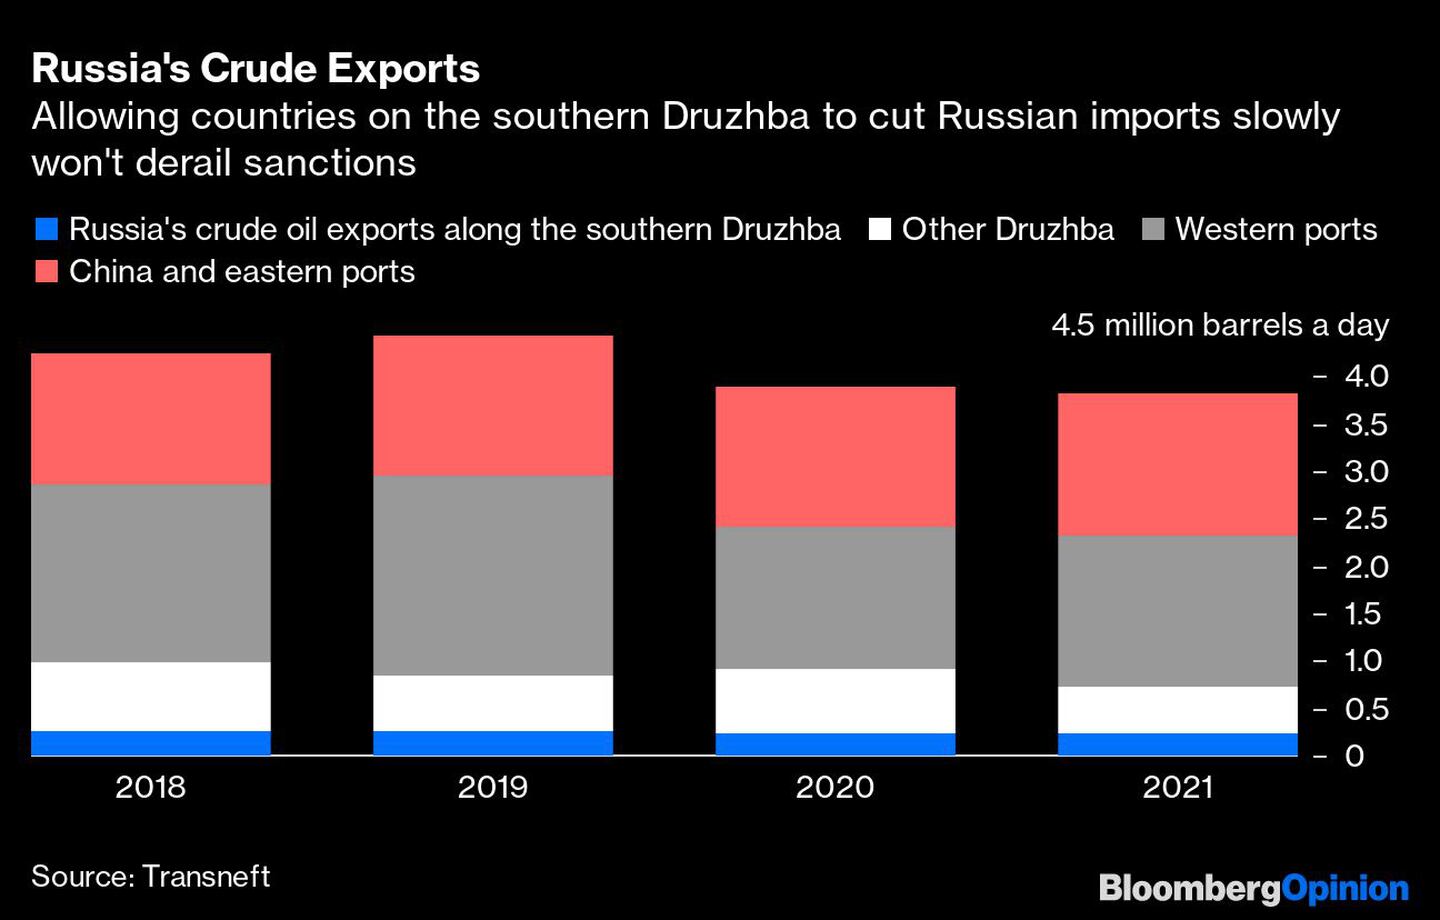 Permitir que los países del sur de Druzhba reduzcan lentamente las importaciones rusas no descarrilará las sanciones.dfd